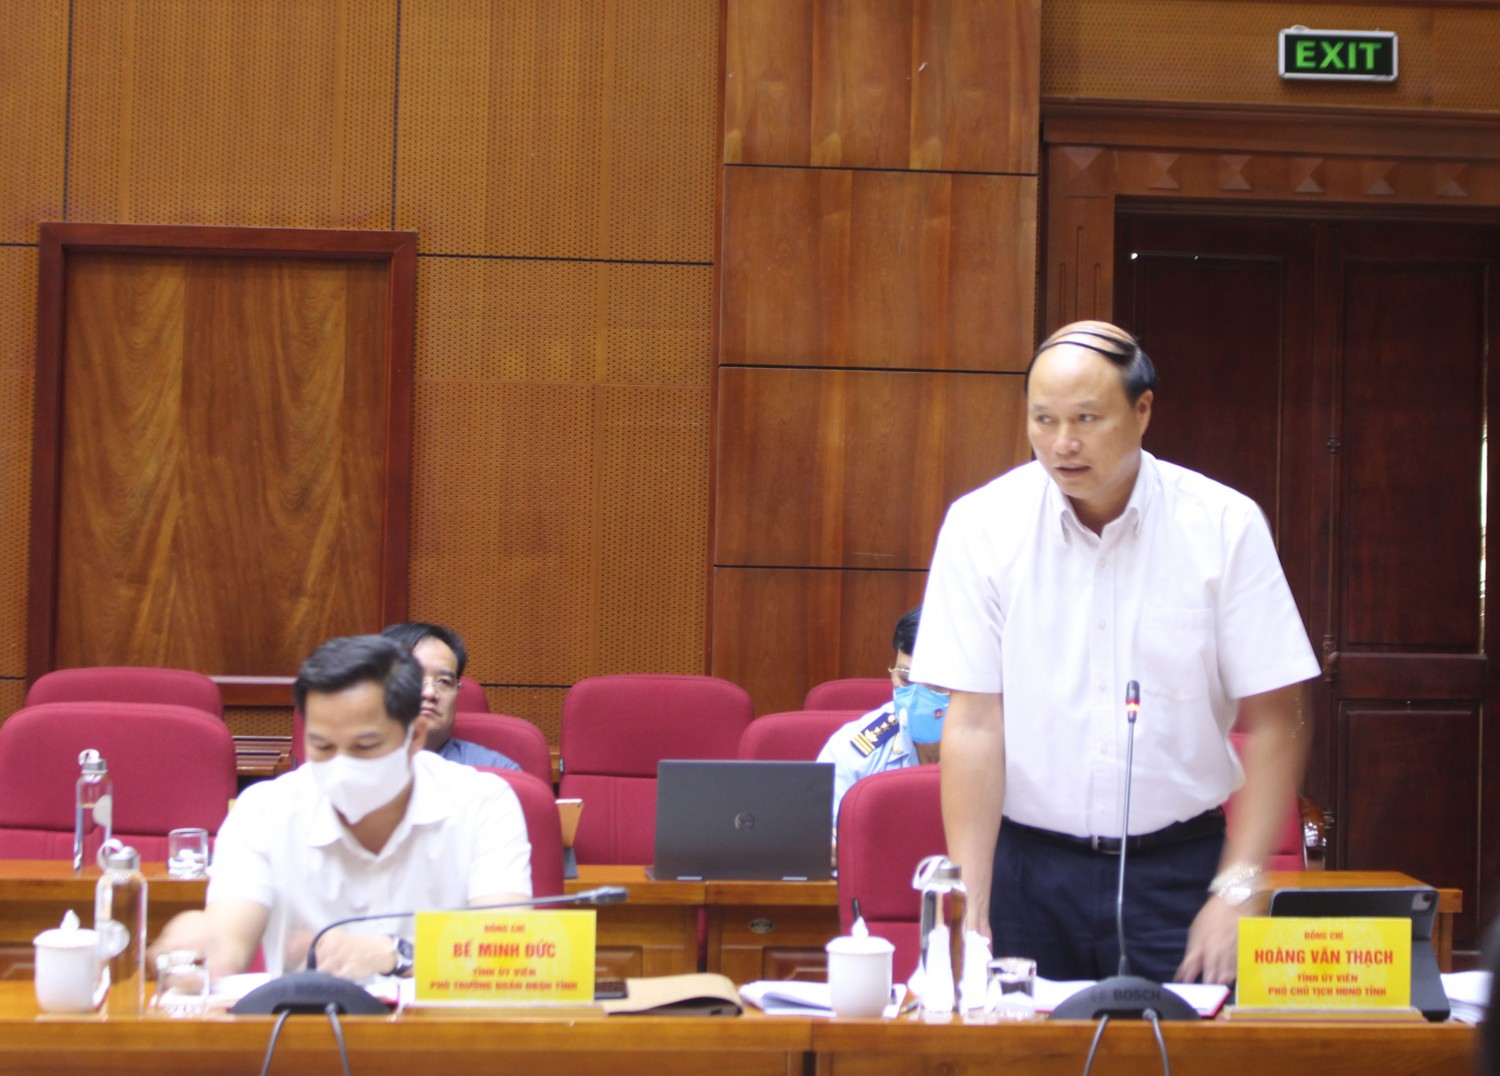 Phó chủ tịch HĐND tỉnh - Hoàng Văn Thạch phát biểu tại phiên họp